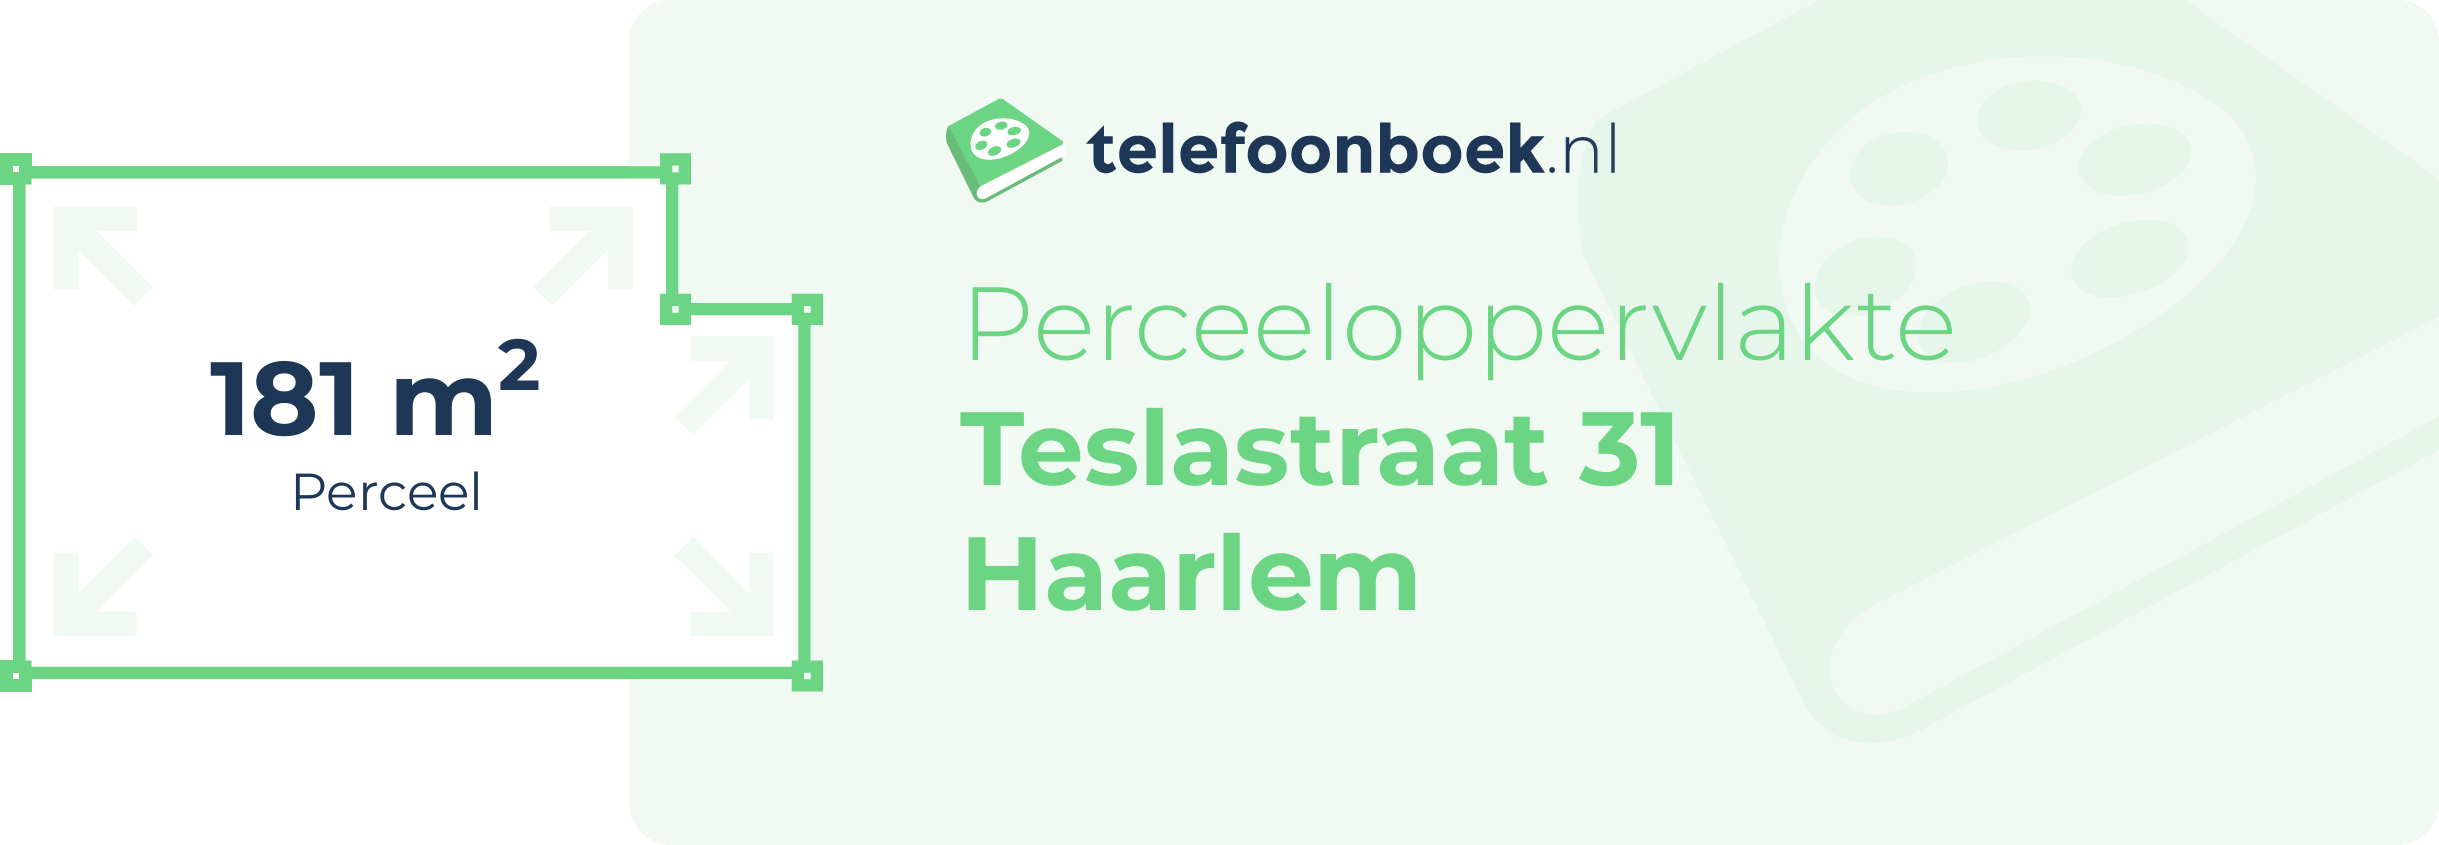 Perceeloppervlakte Teslastraat 31 Haarlem